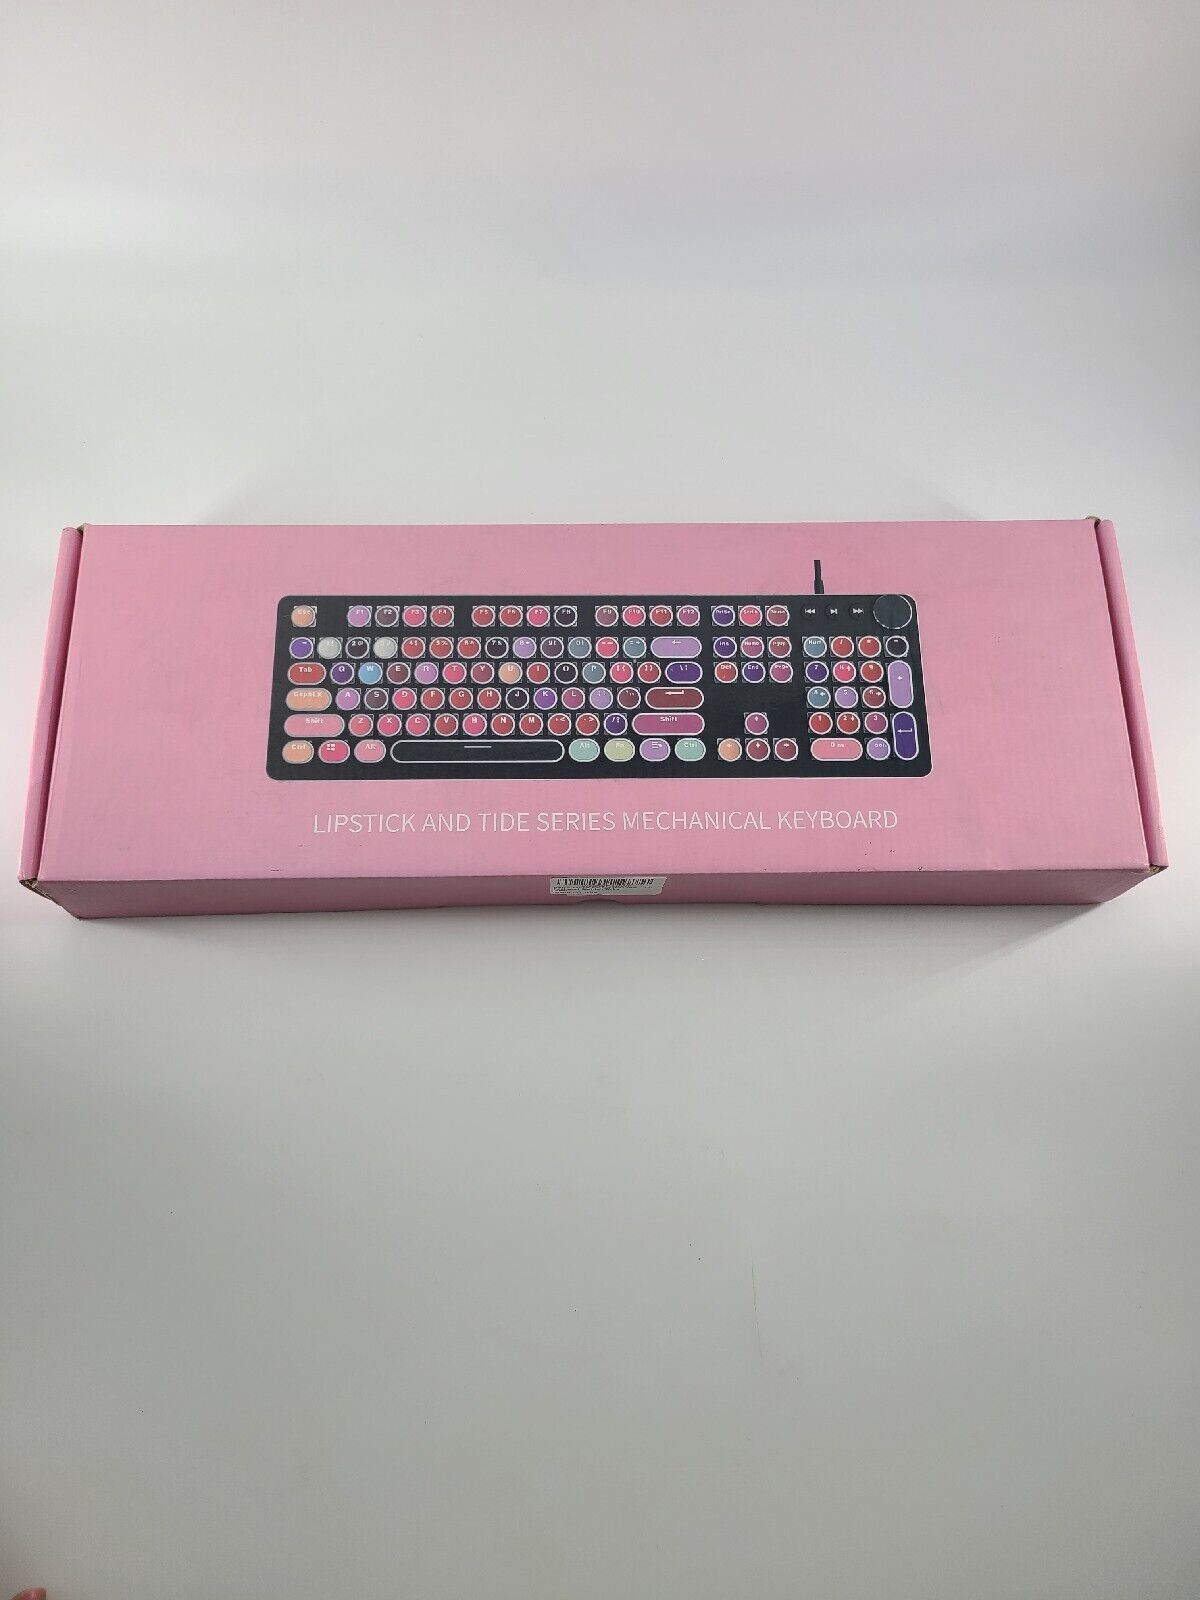 K520 Lipstick Real Mechanical Keyboard Retro Laptop Desktop Keyboard - 104 Keys